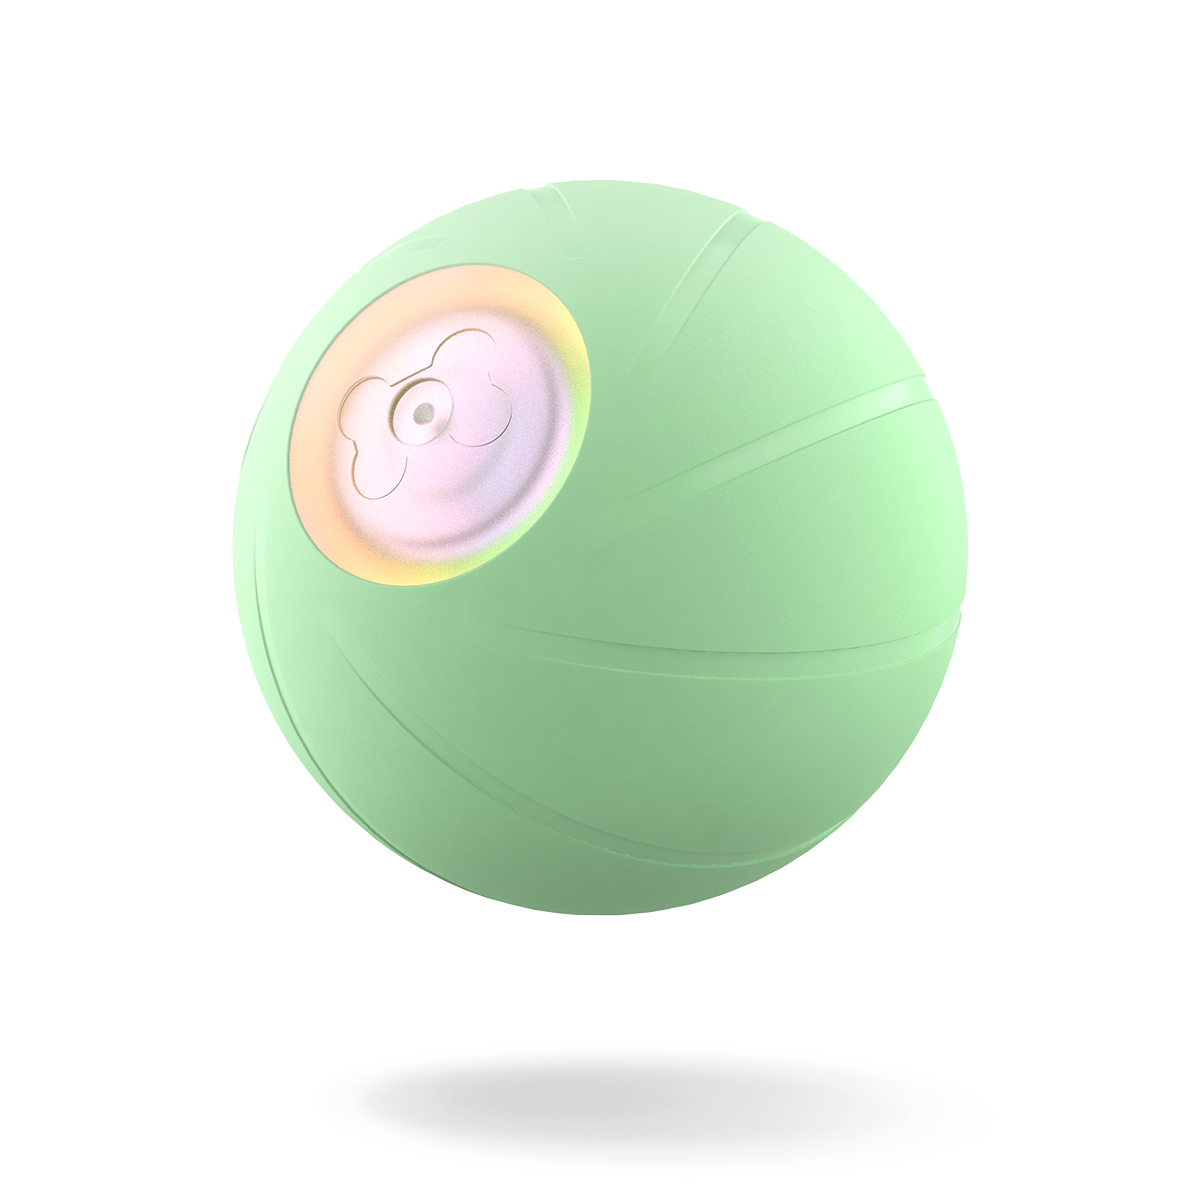 Игрушка для собак Cheerble мяч интерактивная, каучуковая, зеленый, 5.6 см